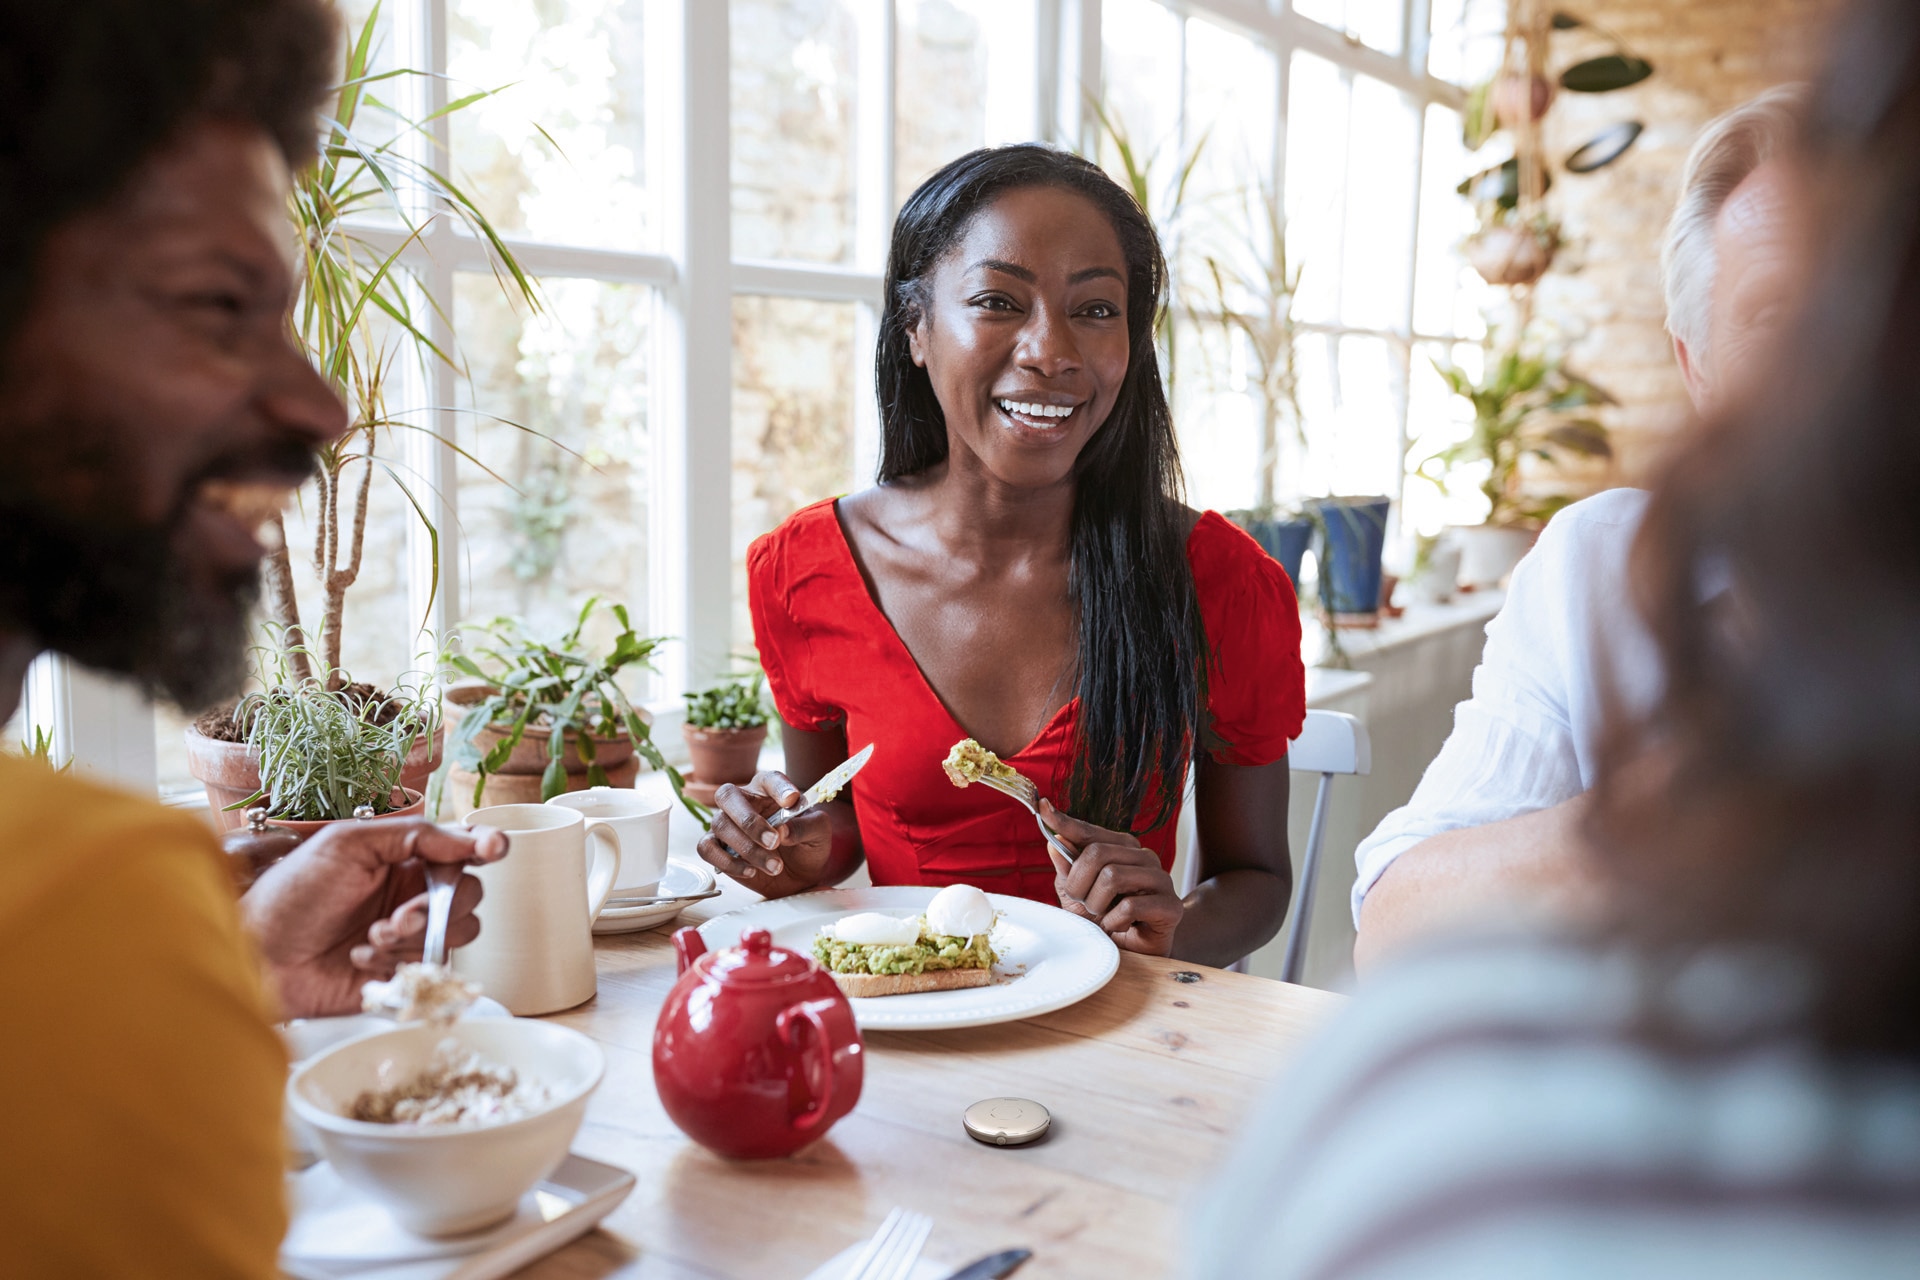 Junge Frau mit Hörsystem bei einer gesunden Mahlzeit unterhält sich fröhlich mit den Anderen an ihrem Tisch. Roger Select liegt vor ihr.